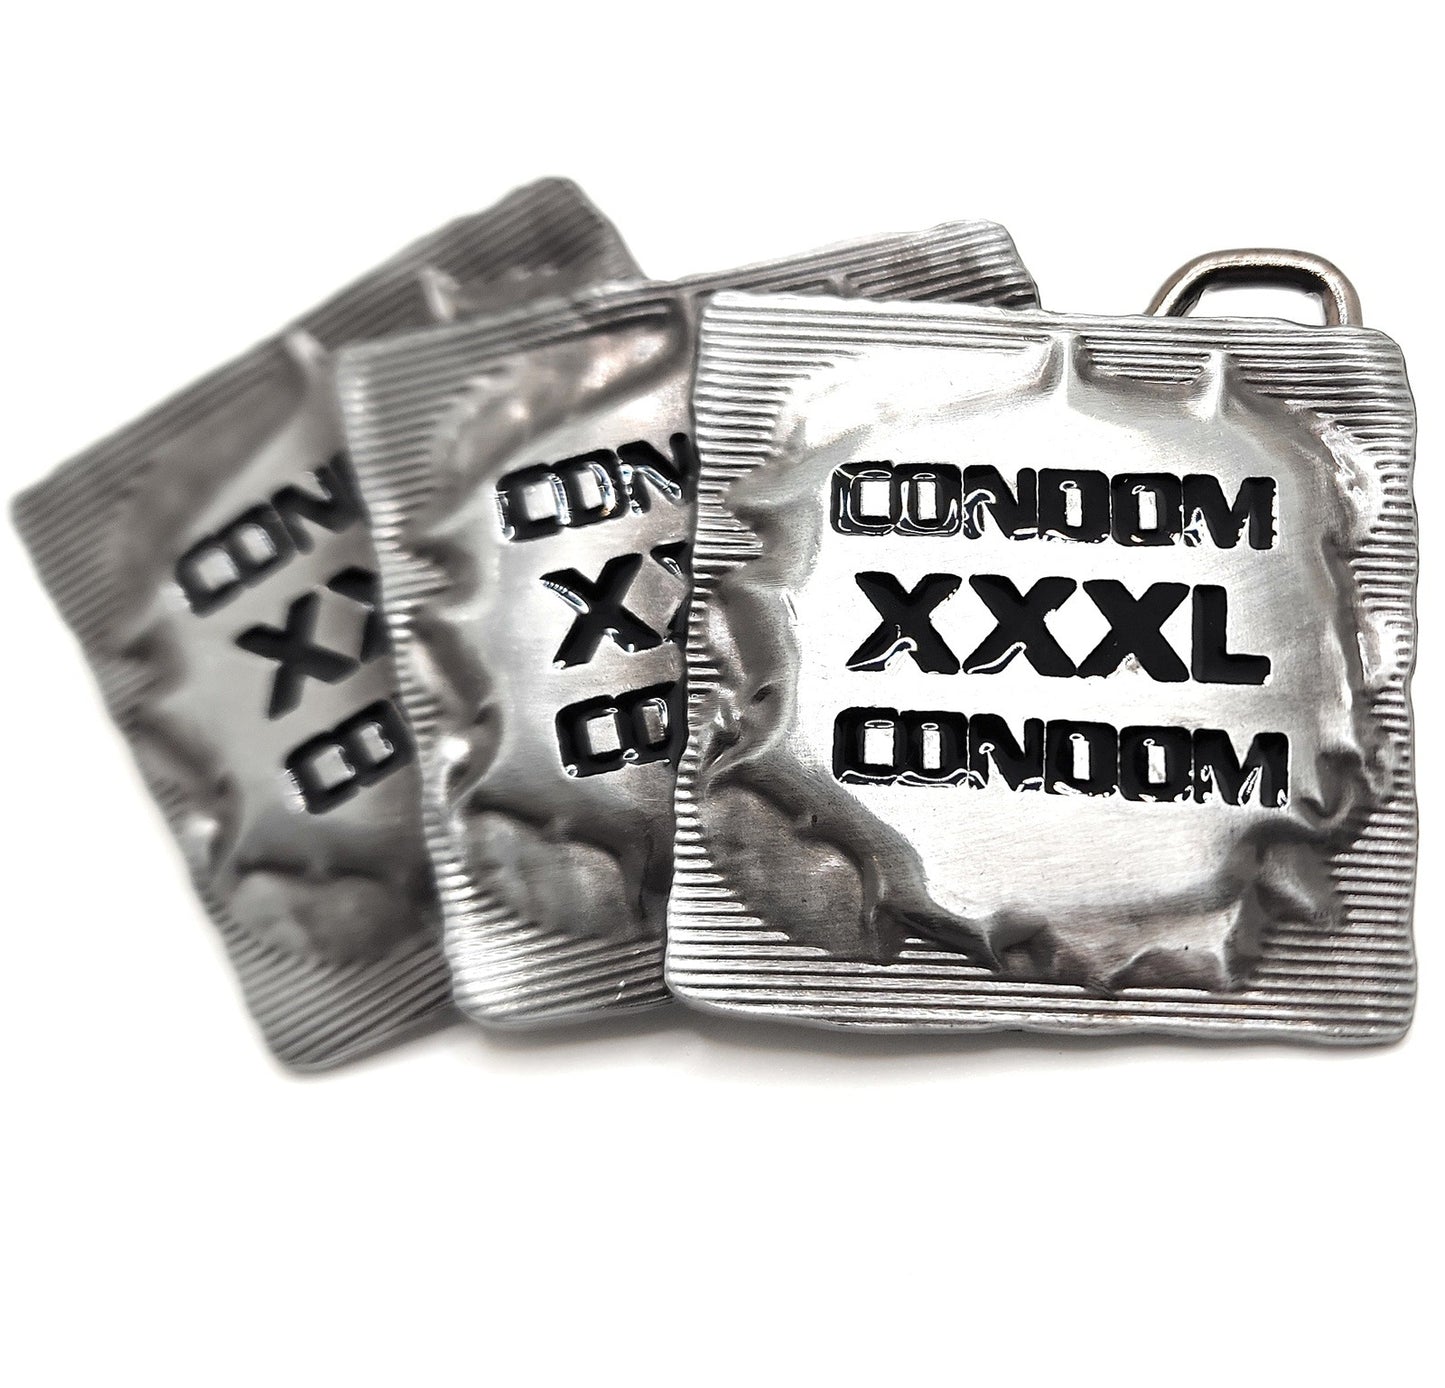 XXXL Condoms Funny Belt Buckle shop.AxeDr.com Belt Buckle, Funny, Funny Belt Buckle